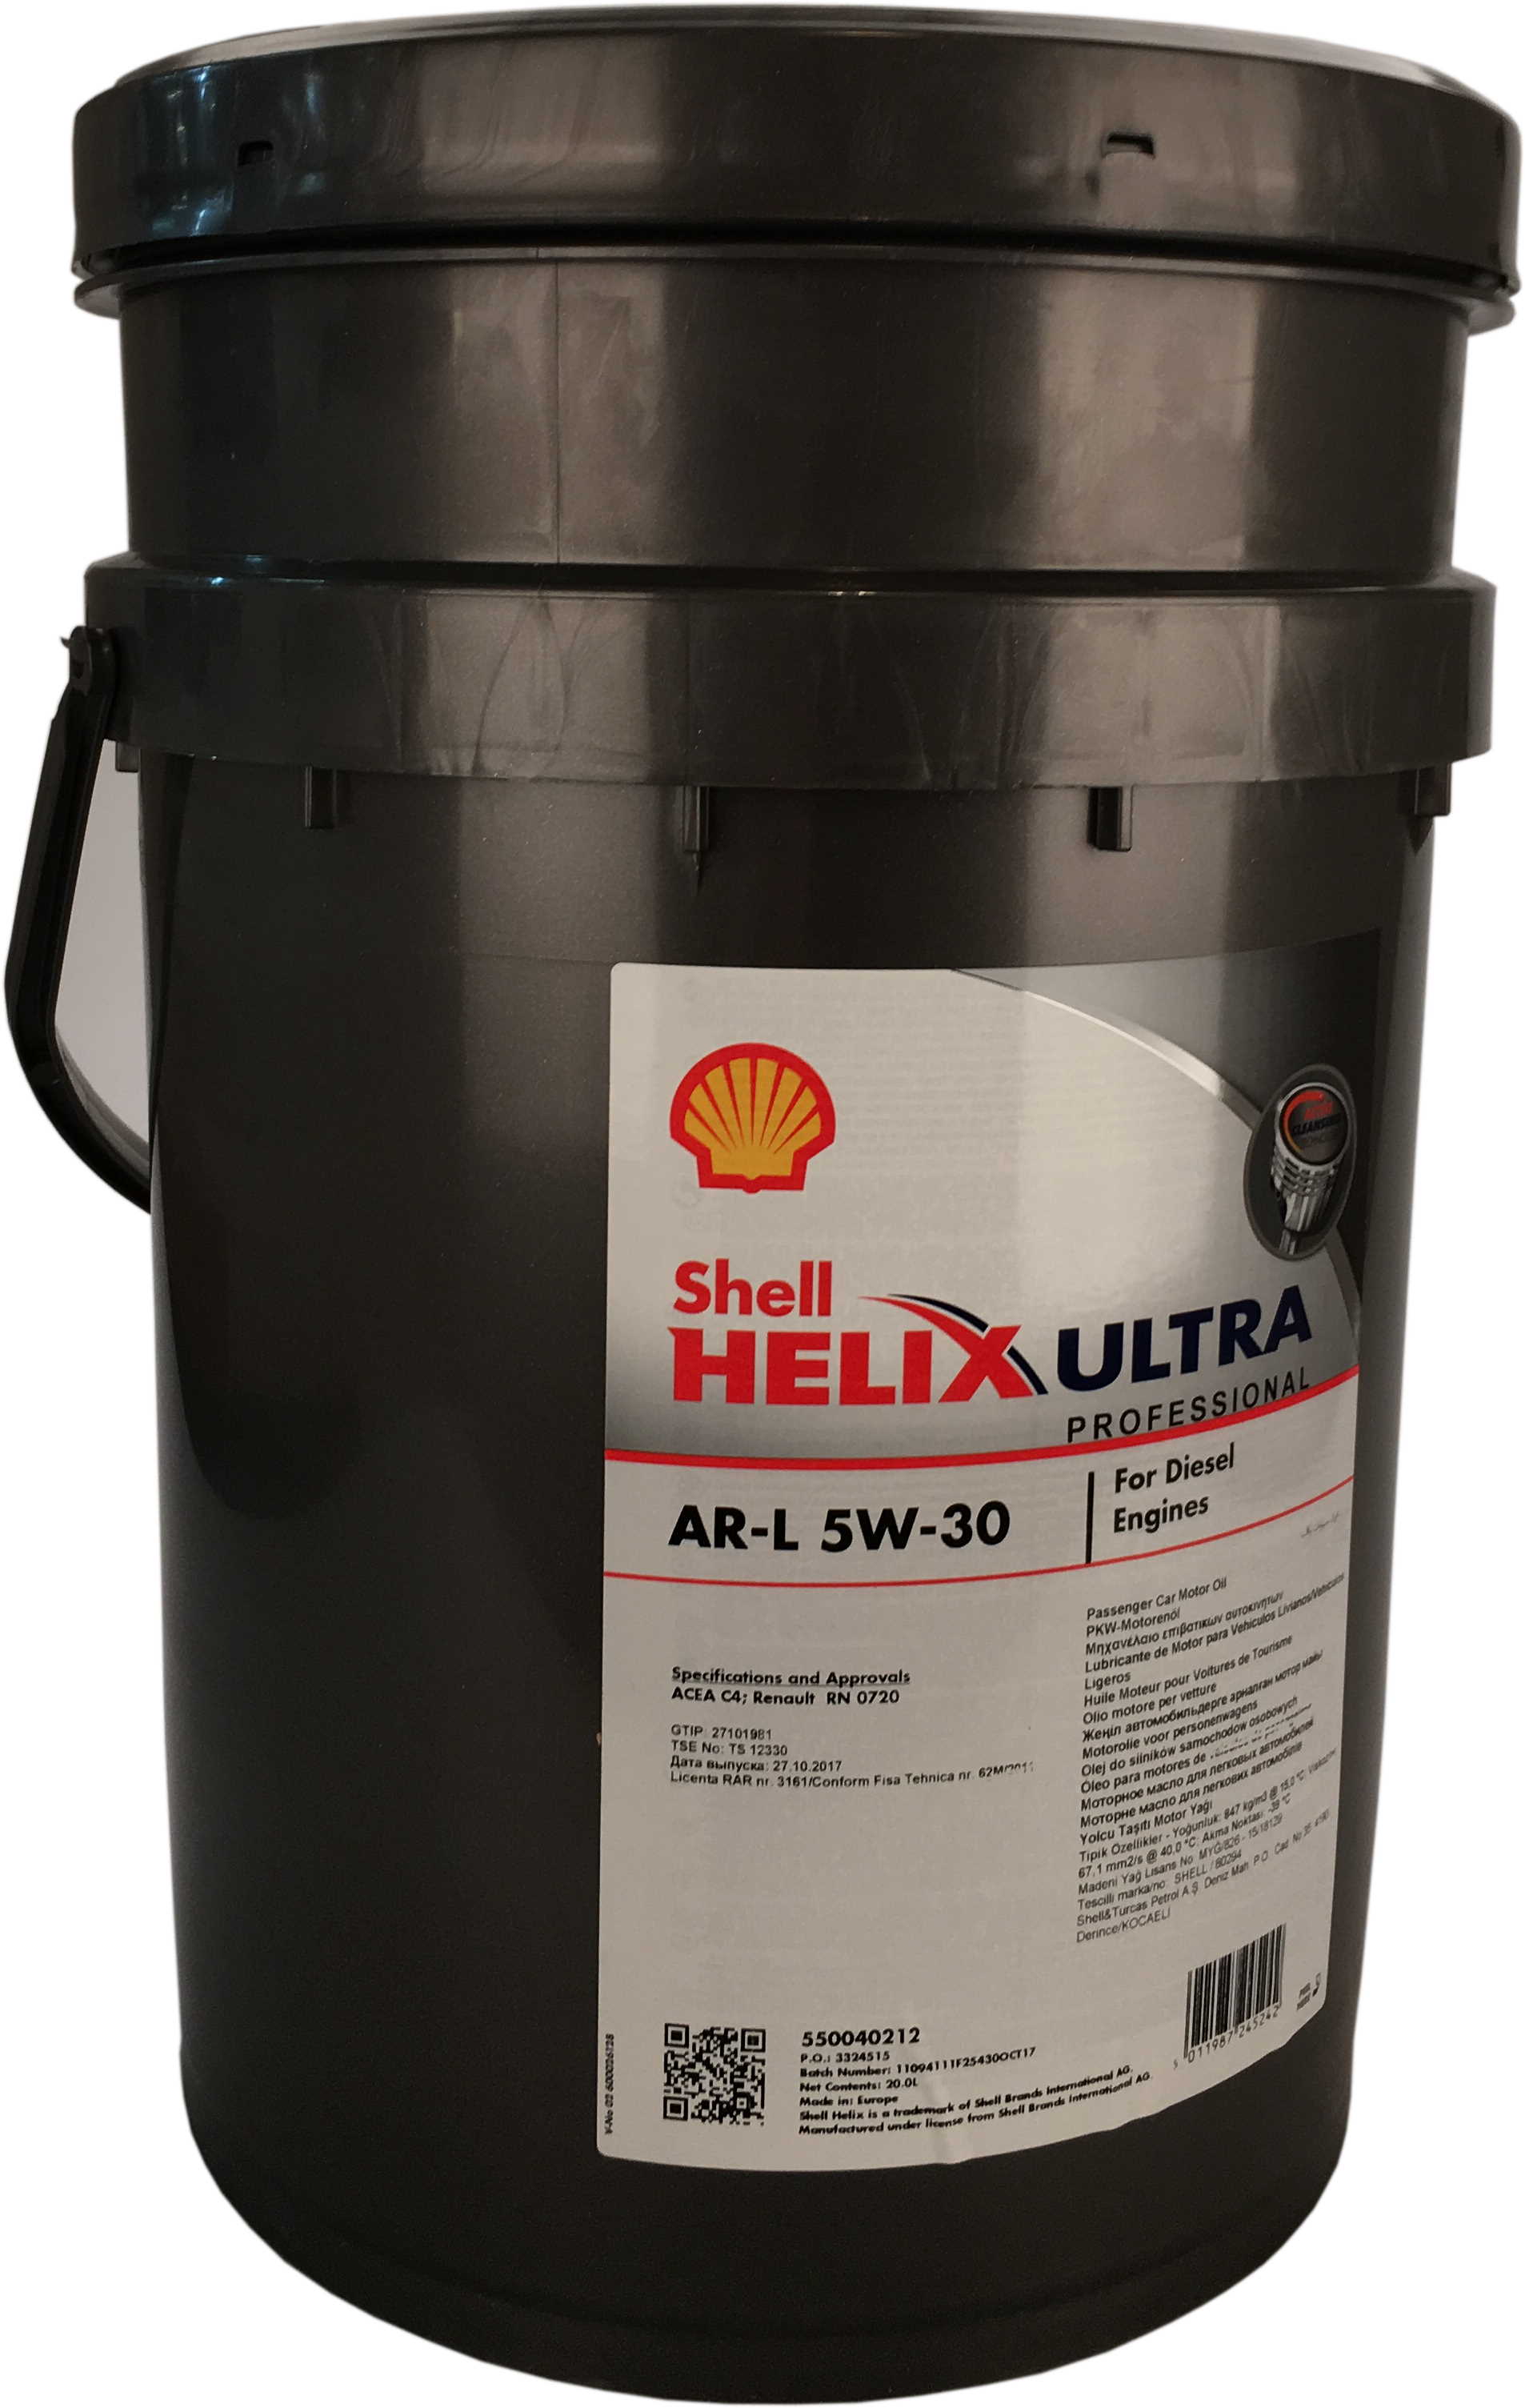 Shell Helix Ultra Professional AR-L 5W-30 20 Liter